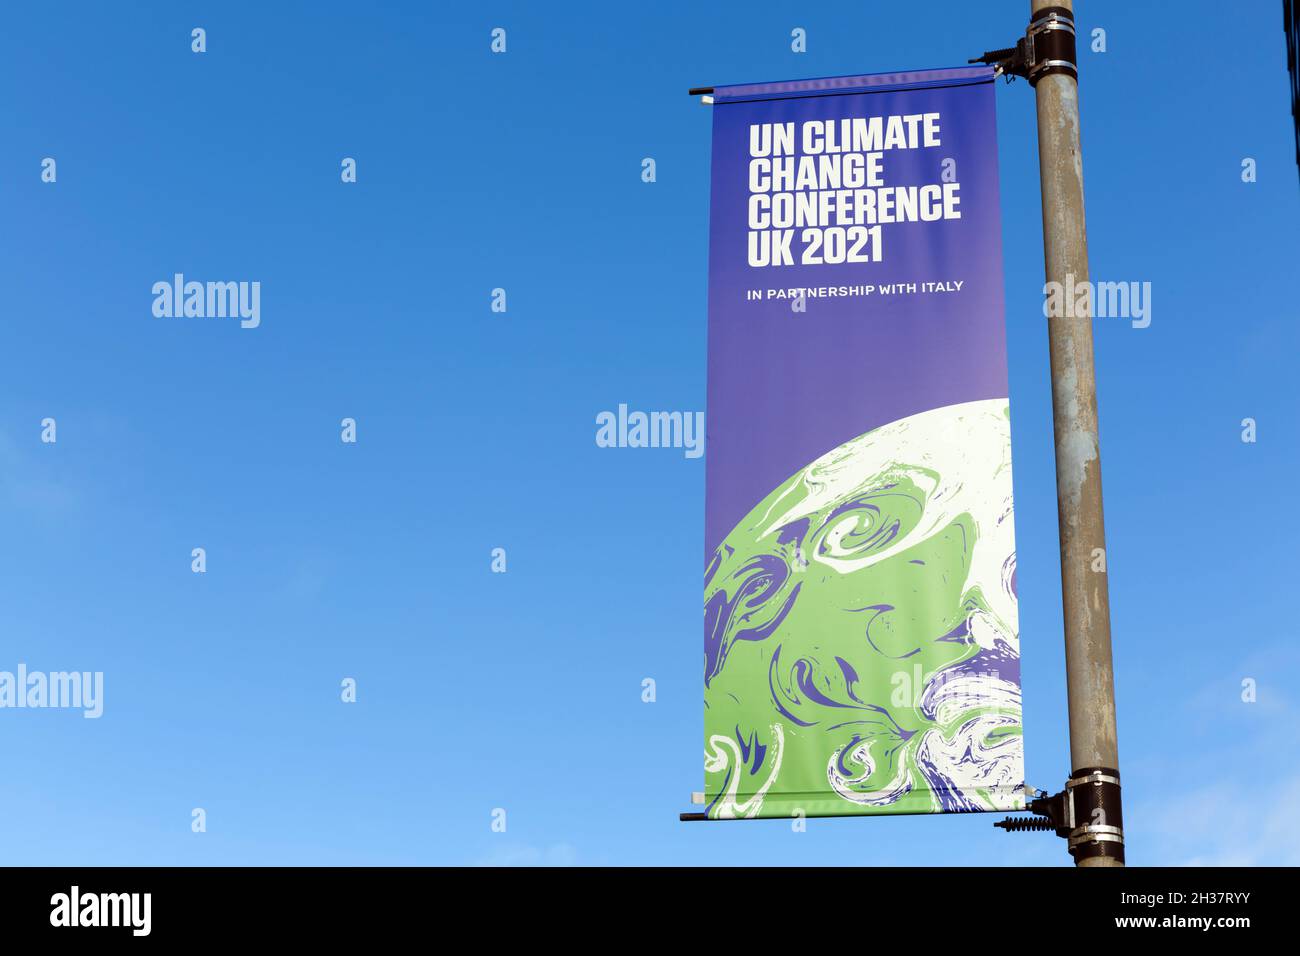 COP 26, United Nations Climate Change Conference UK 2021 banner, Glasgow, Scozia, Regno Unito Foto Stock